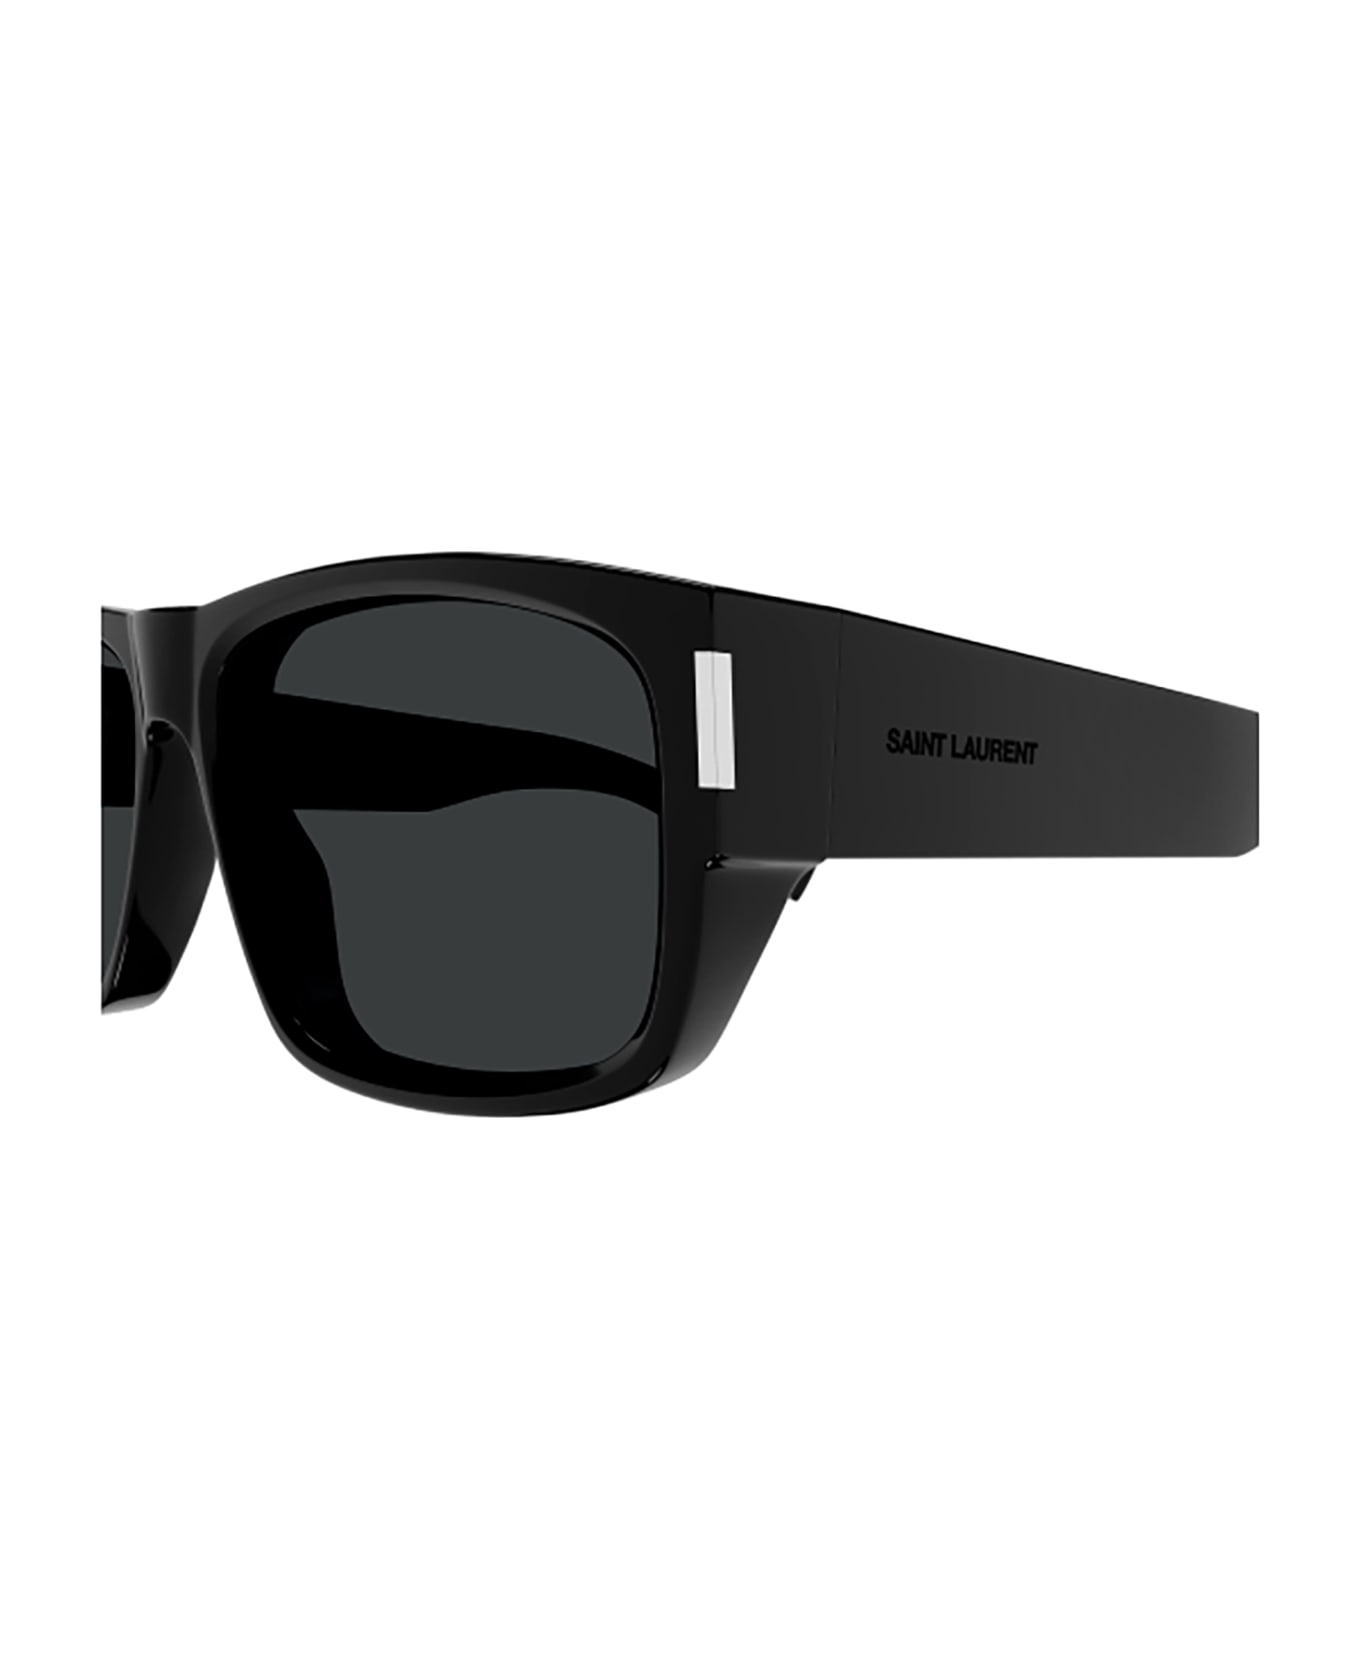 Saint Laurent Eyewear SL 689 Sunglasses - Black Black Black